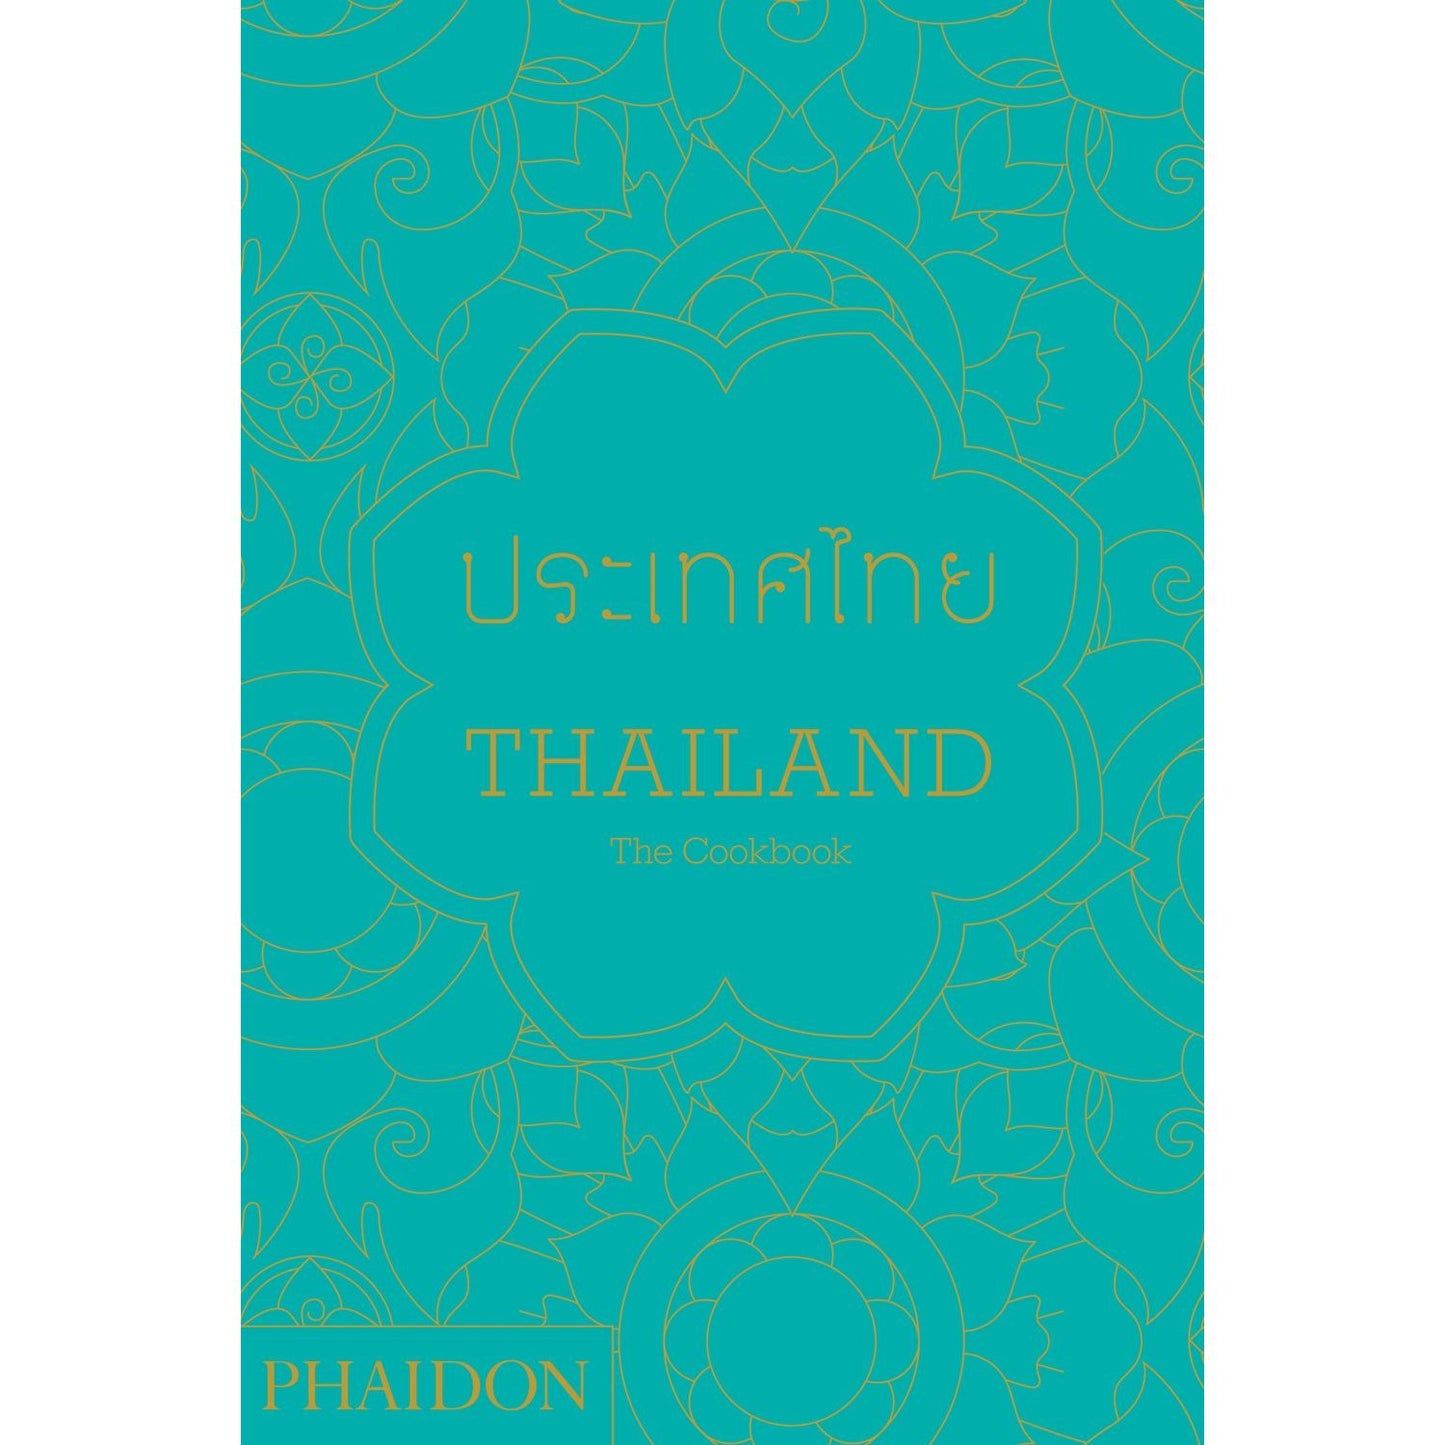 Thailand: The Cookbook (Jean-Pierre Gabriel)